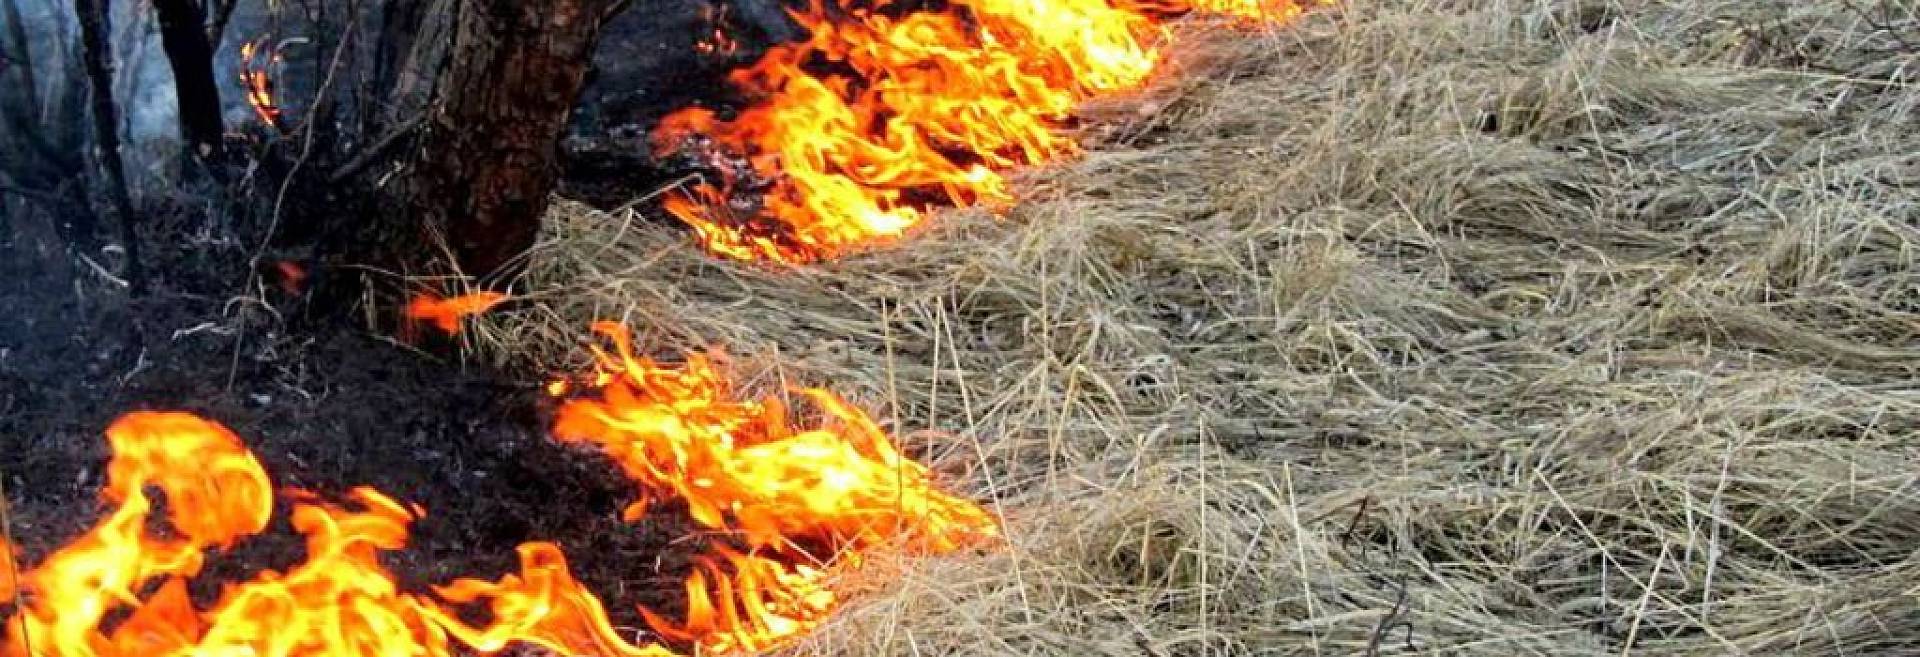 Российских фермеров лишат субсидий из-за сжигания сухой травы